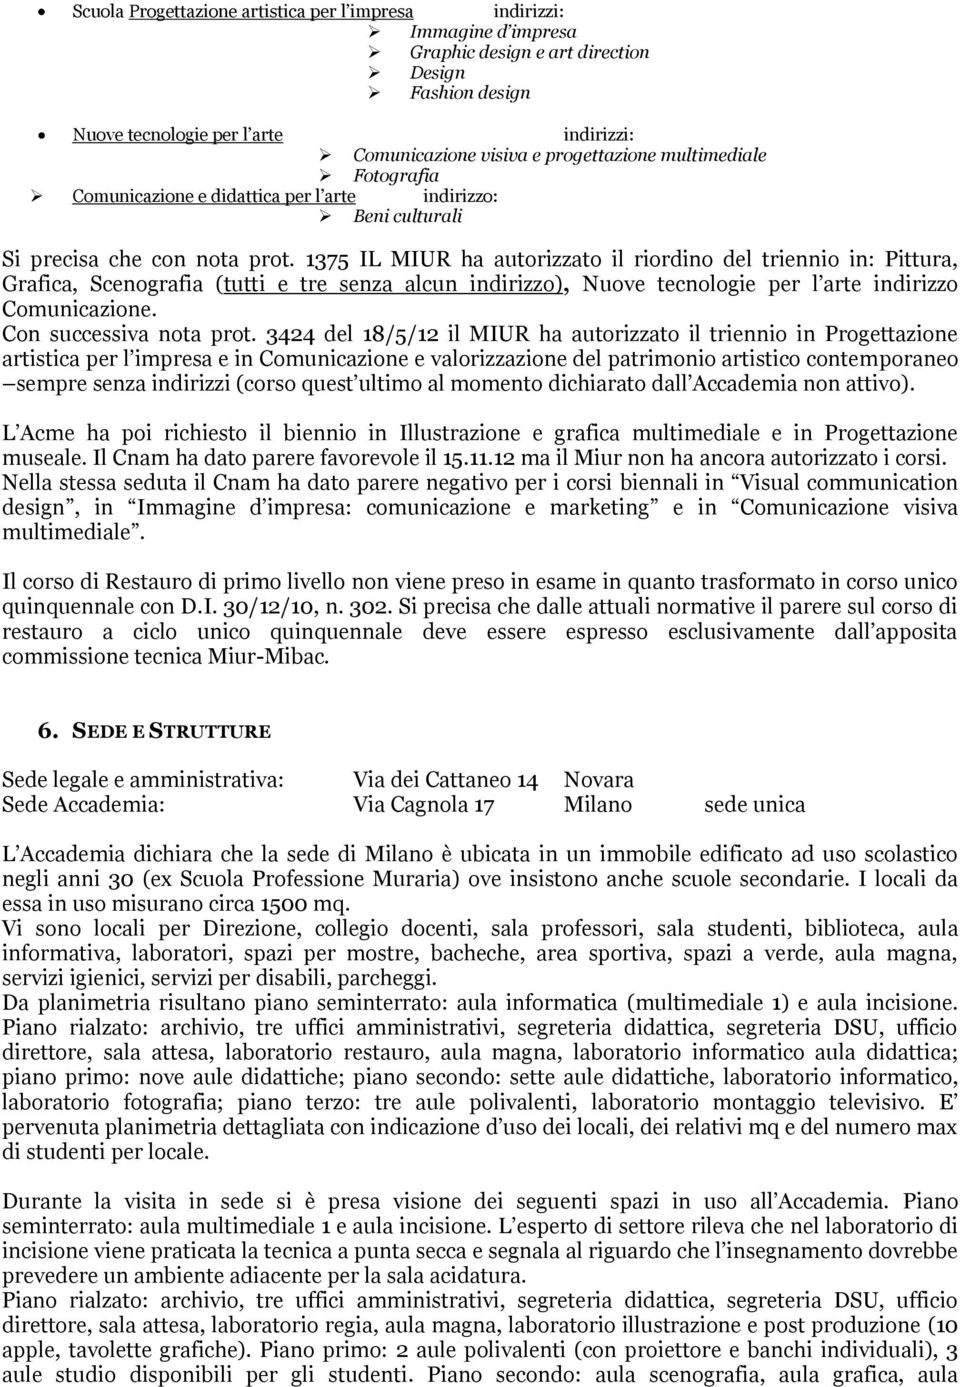 1375 IL MIUR ha autorizzato il riordino del triennio in: Pittura, Grafica, Scenografia (tutti e tre senza alcun indirizzo), Nuove tecnologie per l arte indirizzo Comunicazione.